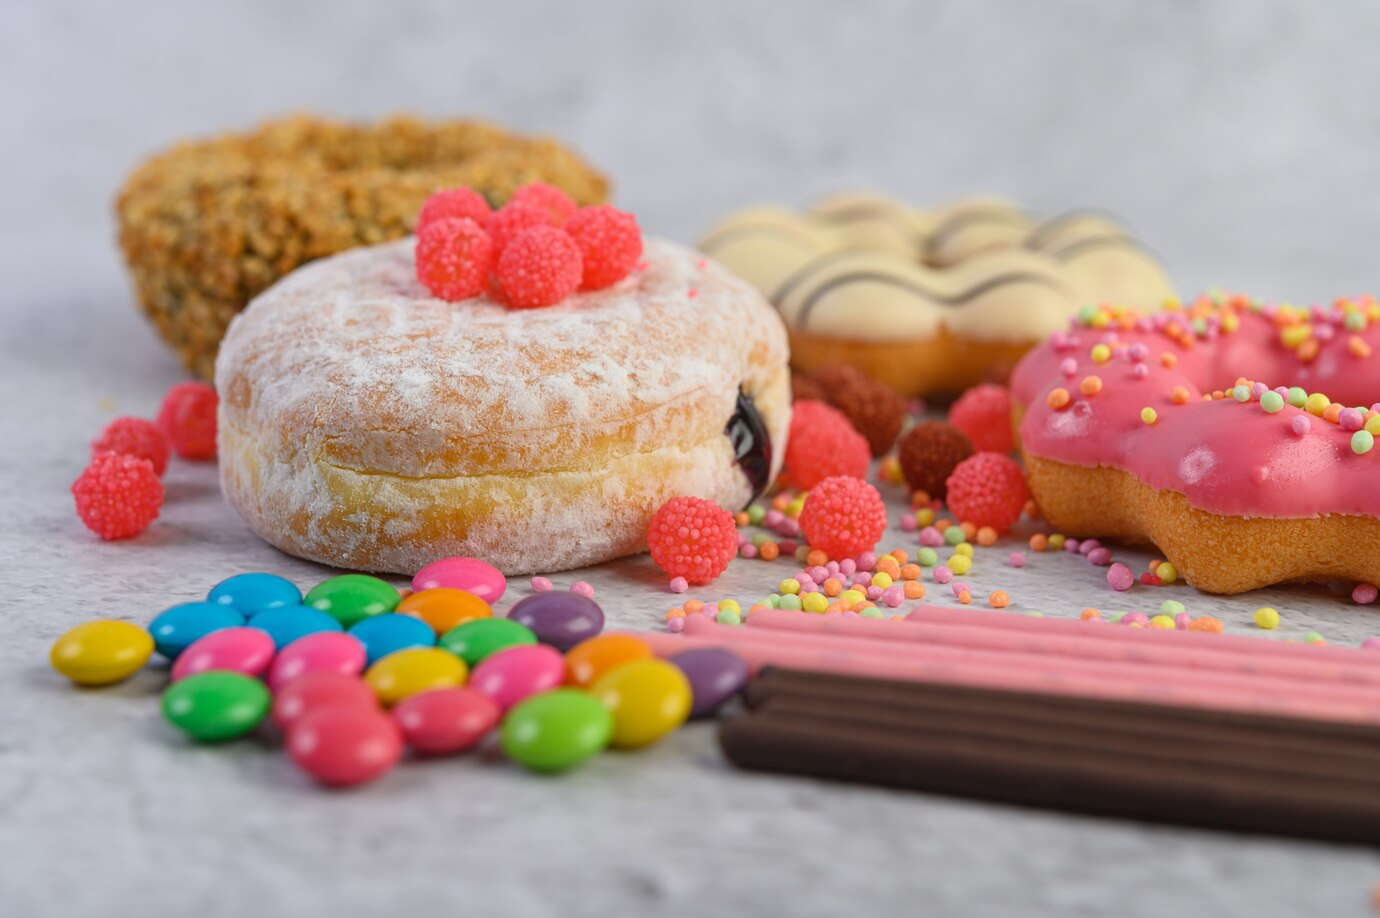 Hạn chế sử dụng quá nhiều chất ngọt không tốt cho sức khỏe người già tiểu đường